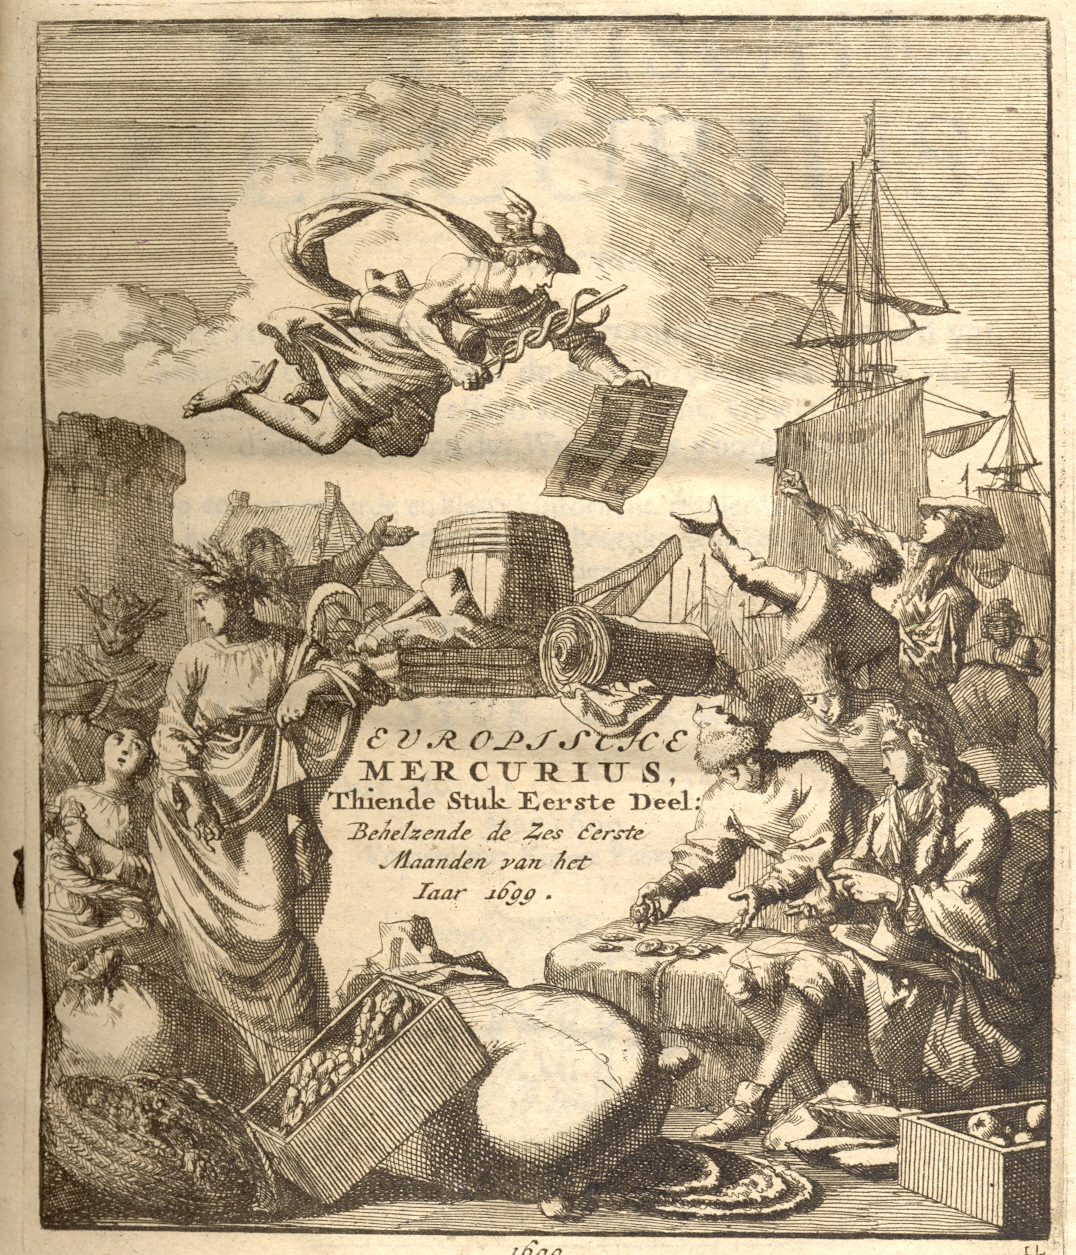 Europische Mercurius, 1699.